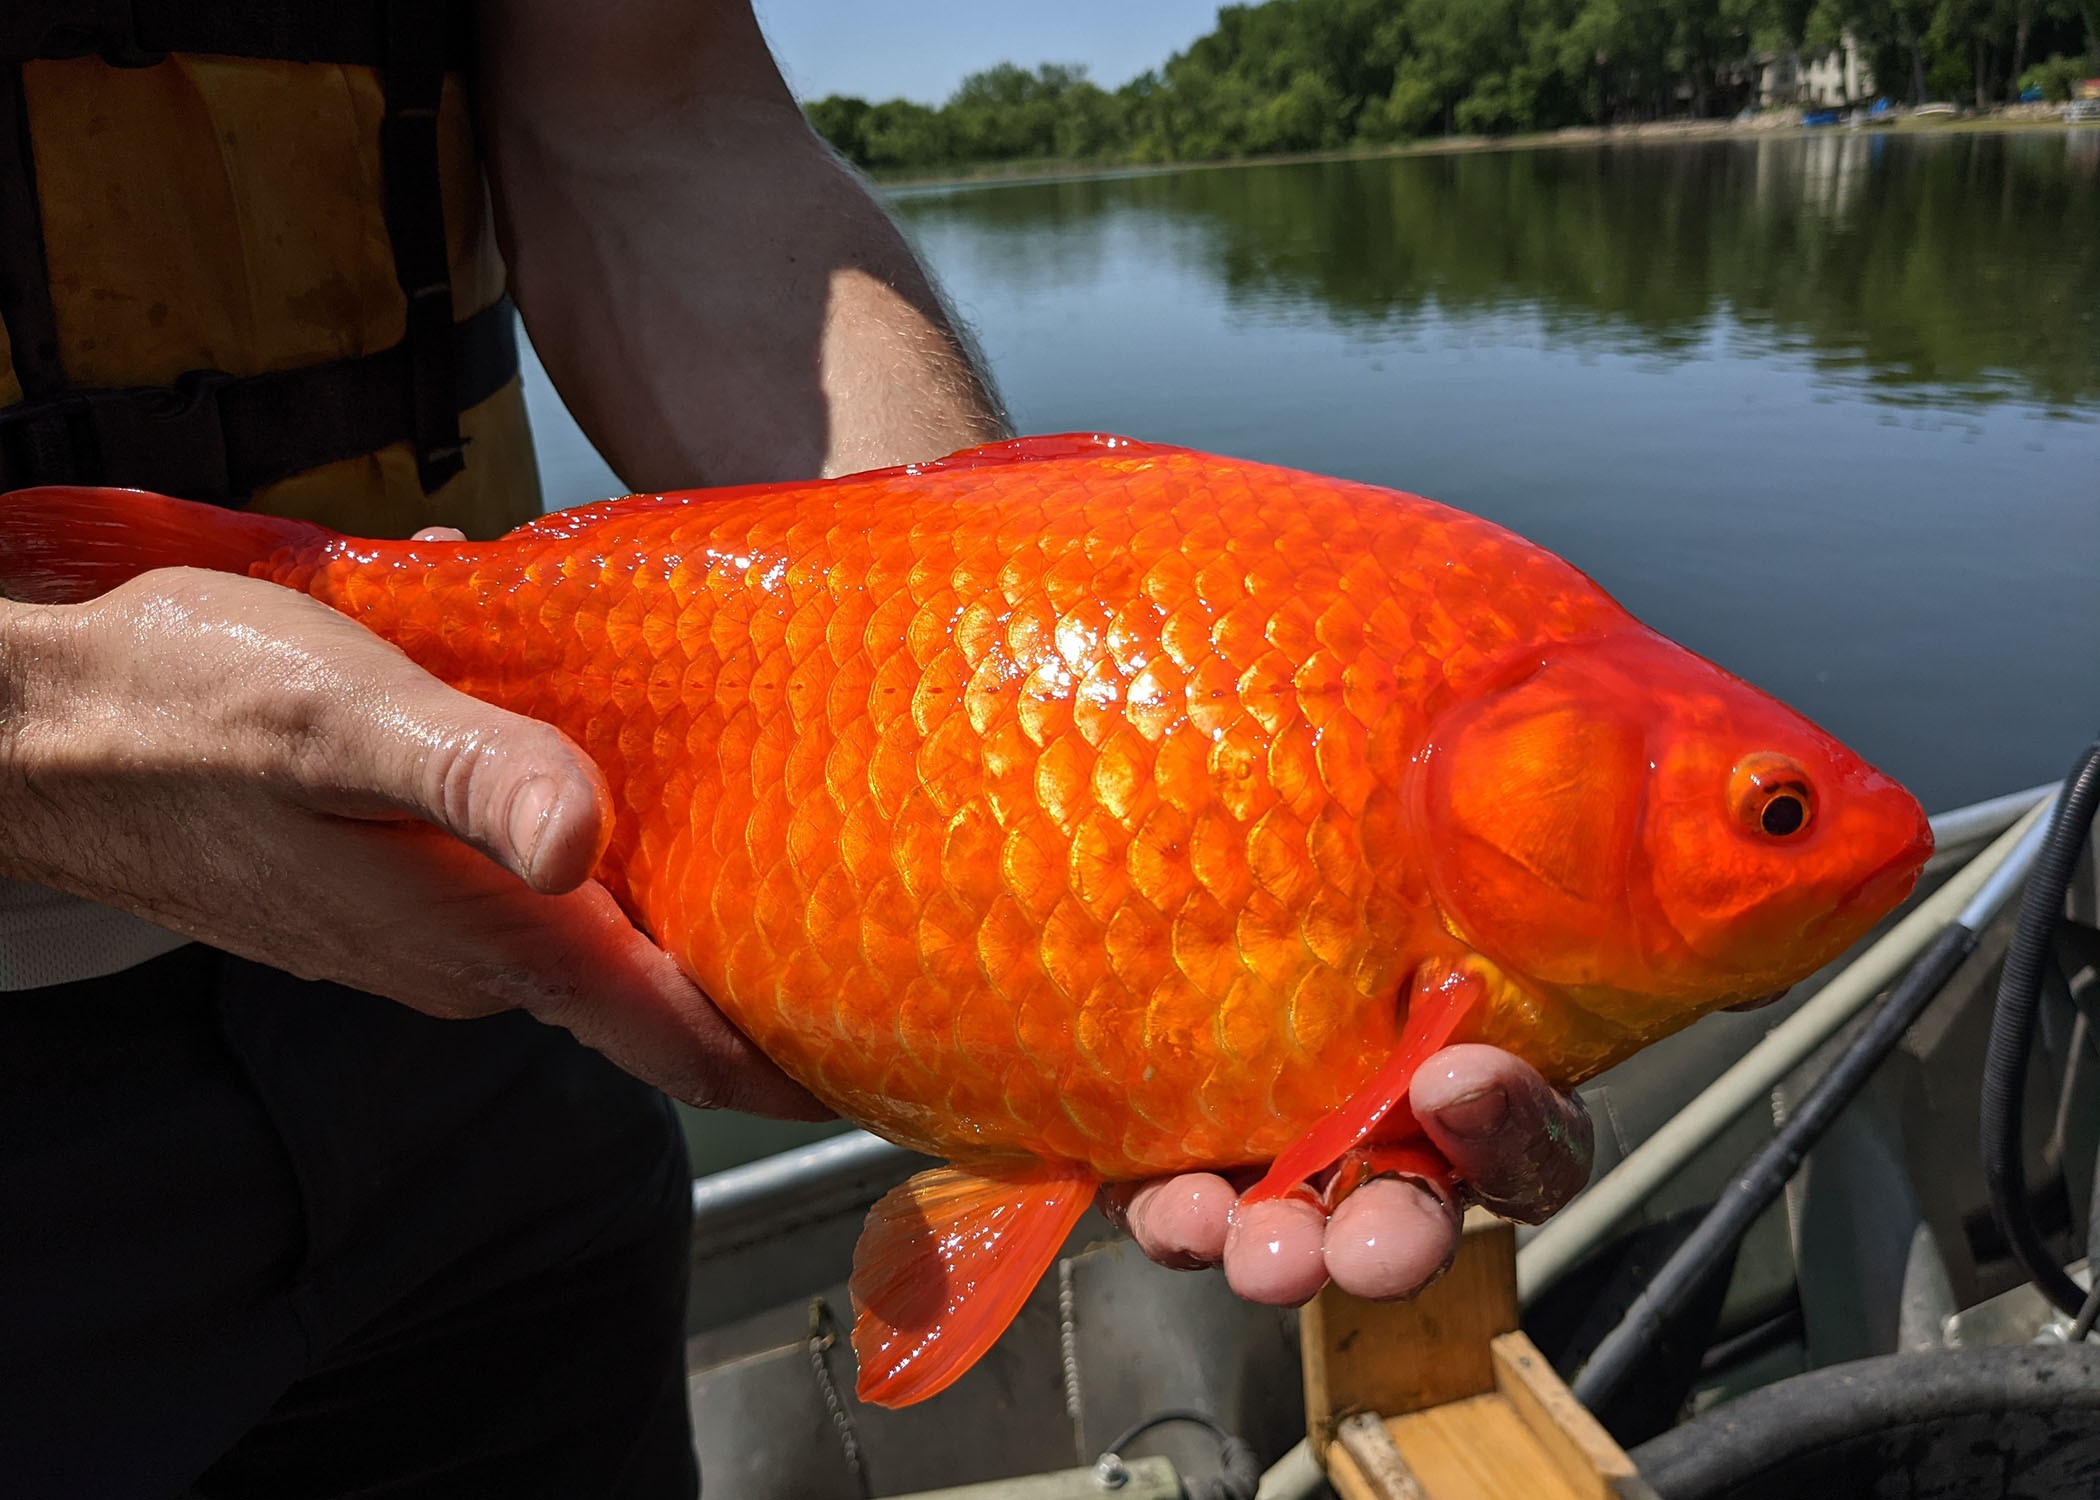 Cidade dos EUA alerta moradores após encontrar 'peixe-dourado gigante' em lago; espécie é considerada invasora thumbnail